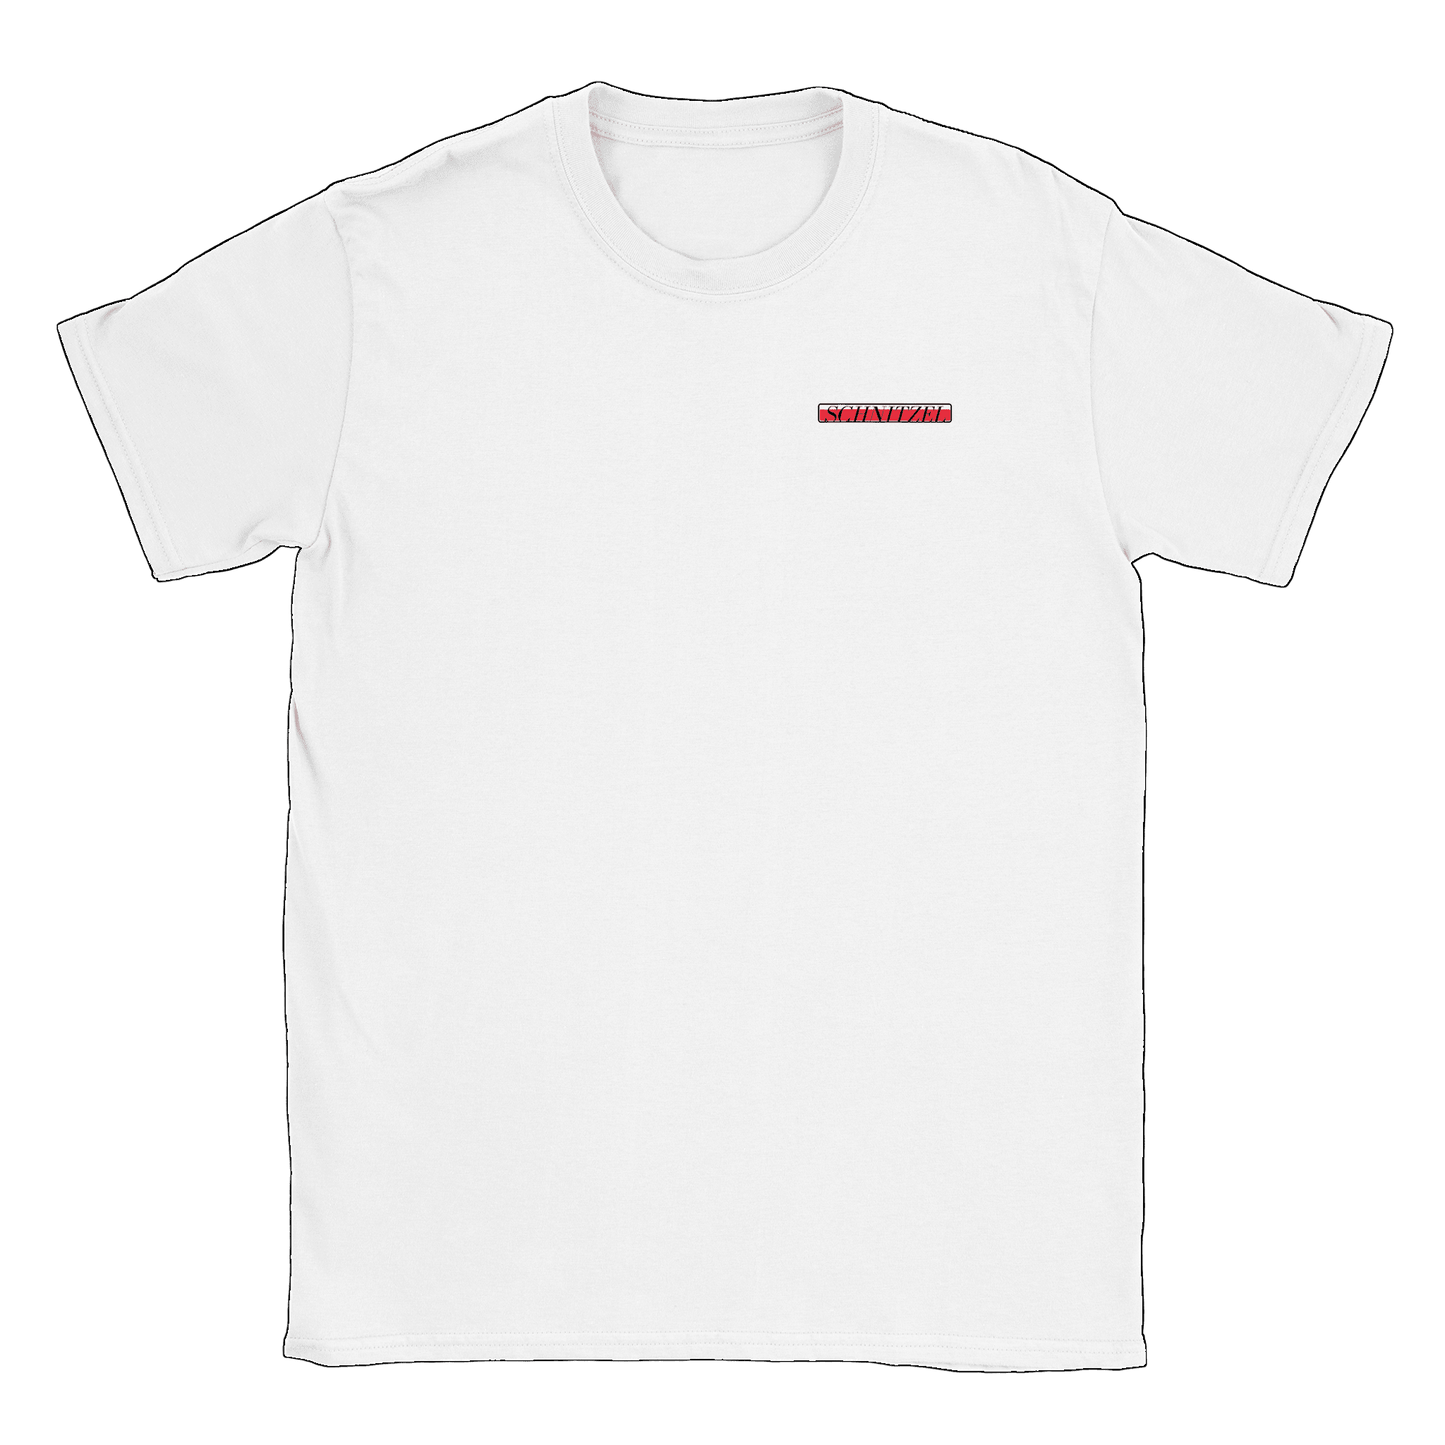 Schnitzel - T-shirt Vit